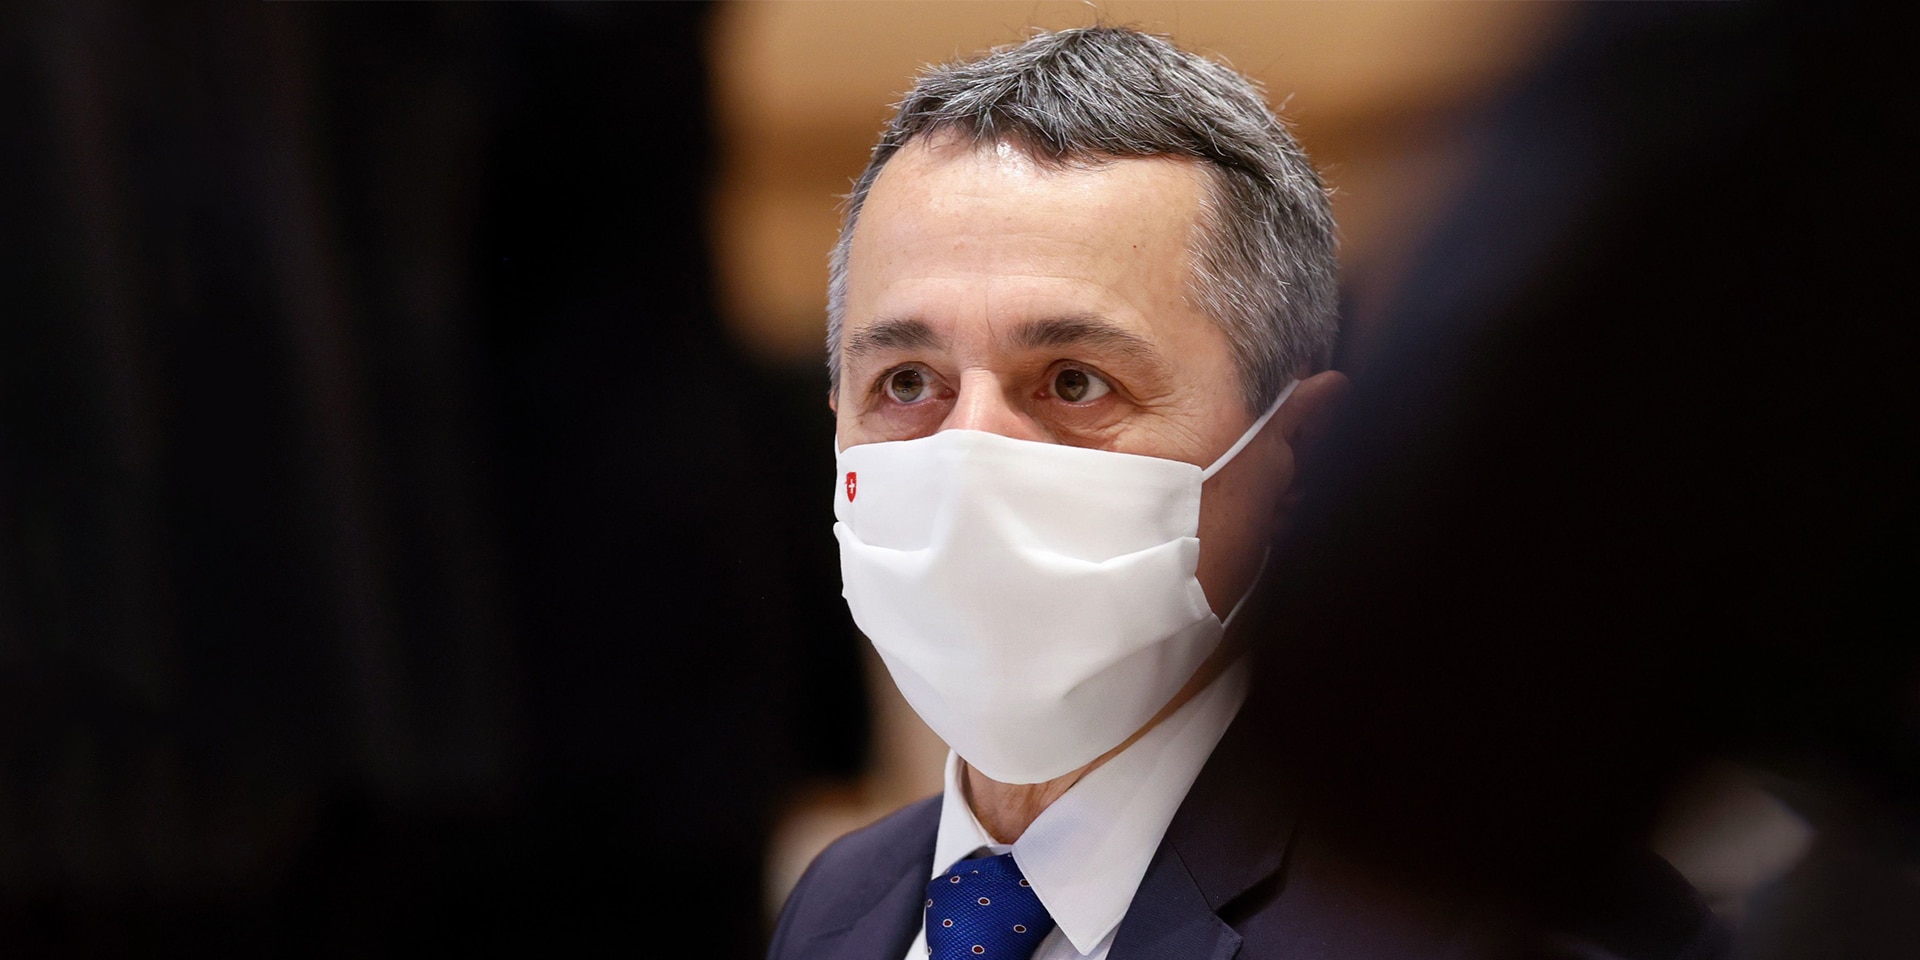  Primo piano del consigliere federale Ignazio Cassis con indosso una mascherina con la croce svizzera in occasione di un’Assemblea dell’ONU tenutasi a novembre 2020.